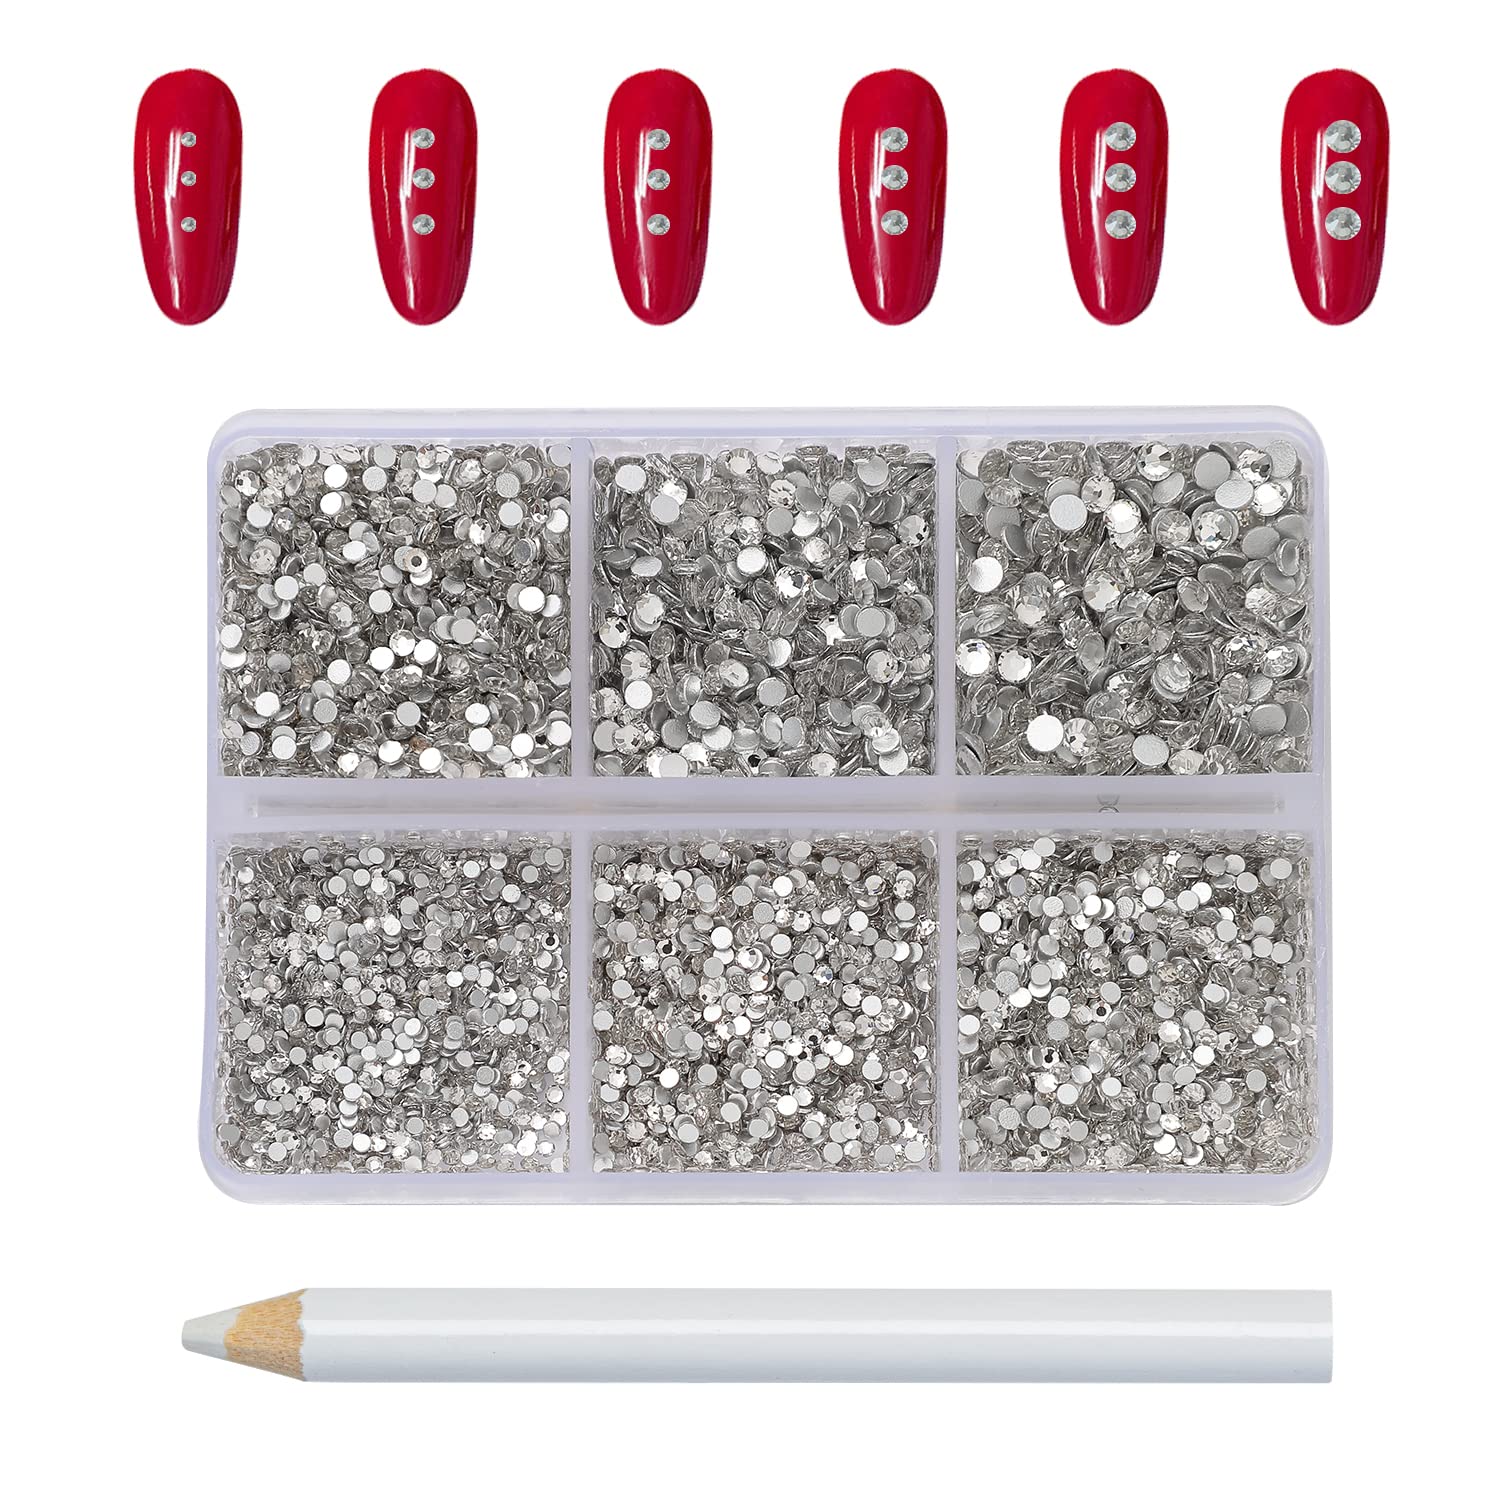 KIMSHINY 7200pcs Flatback Rhinestones Kit Mixed 6 Sizes Non Hotfixed White  Rhinestones for Nails Gems Clear